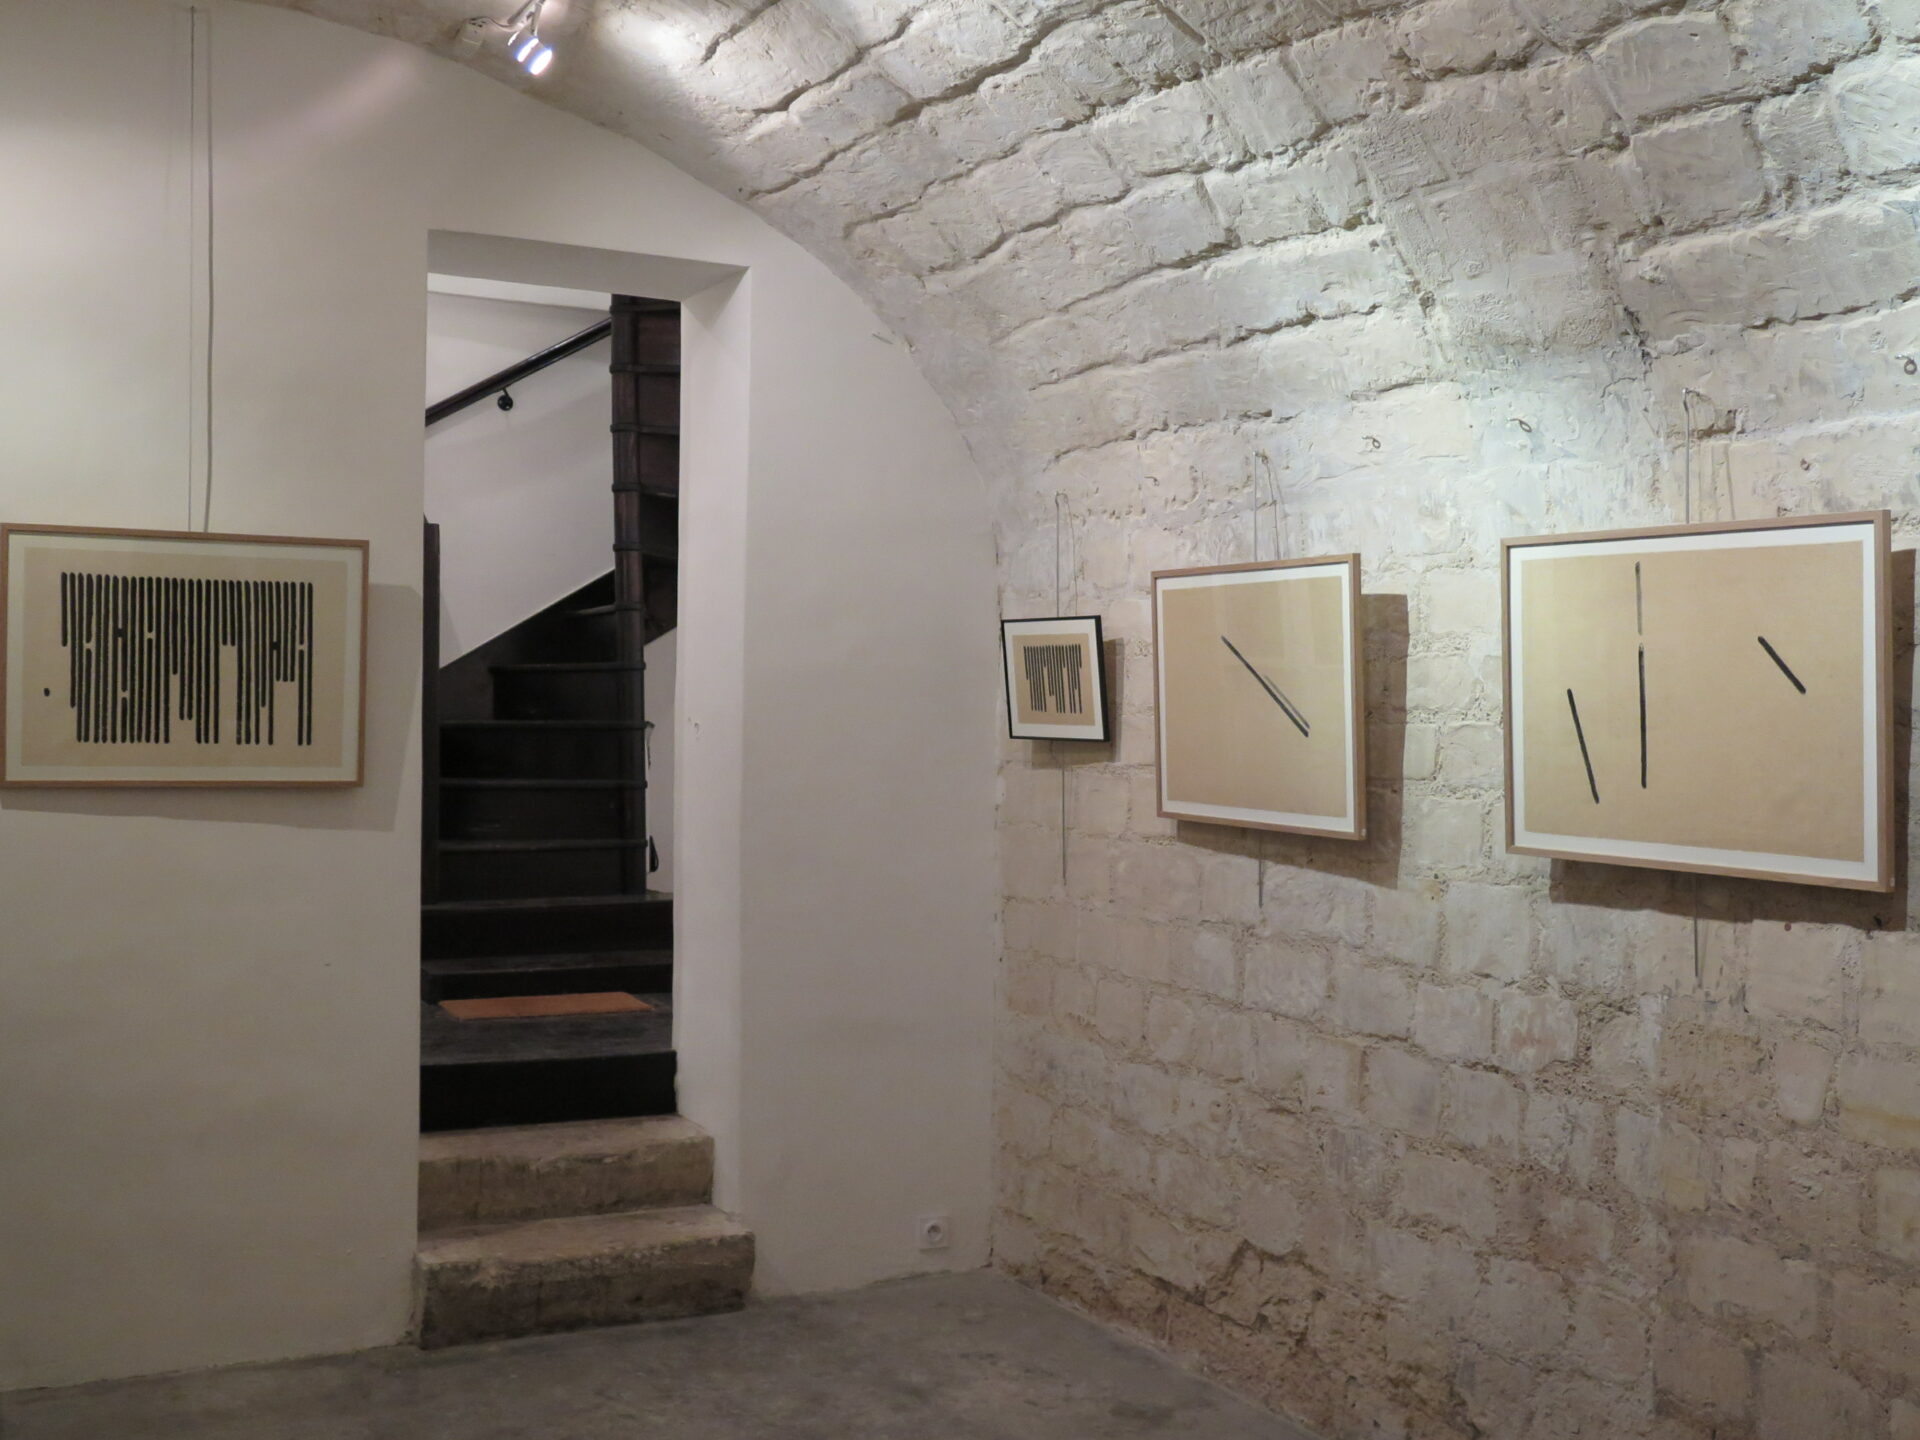 2015 - Galerie Impressions, Paris (75003)